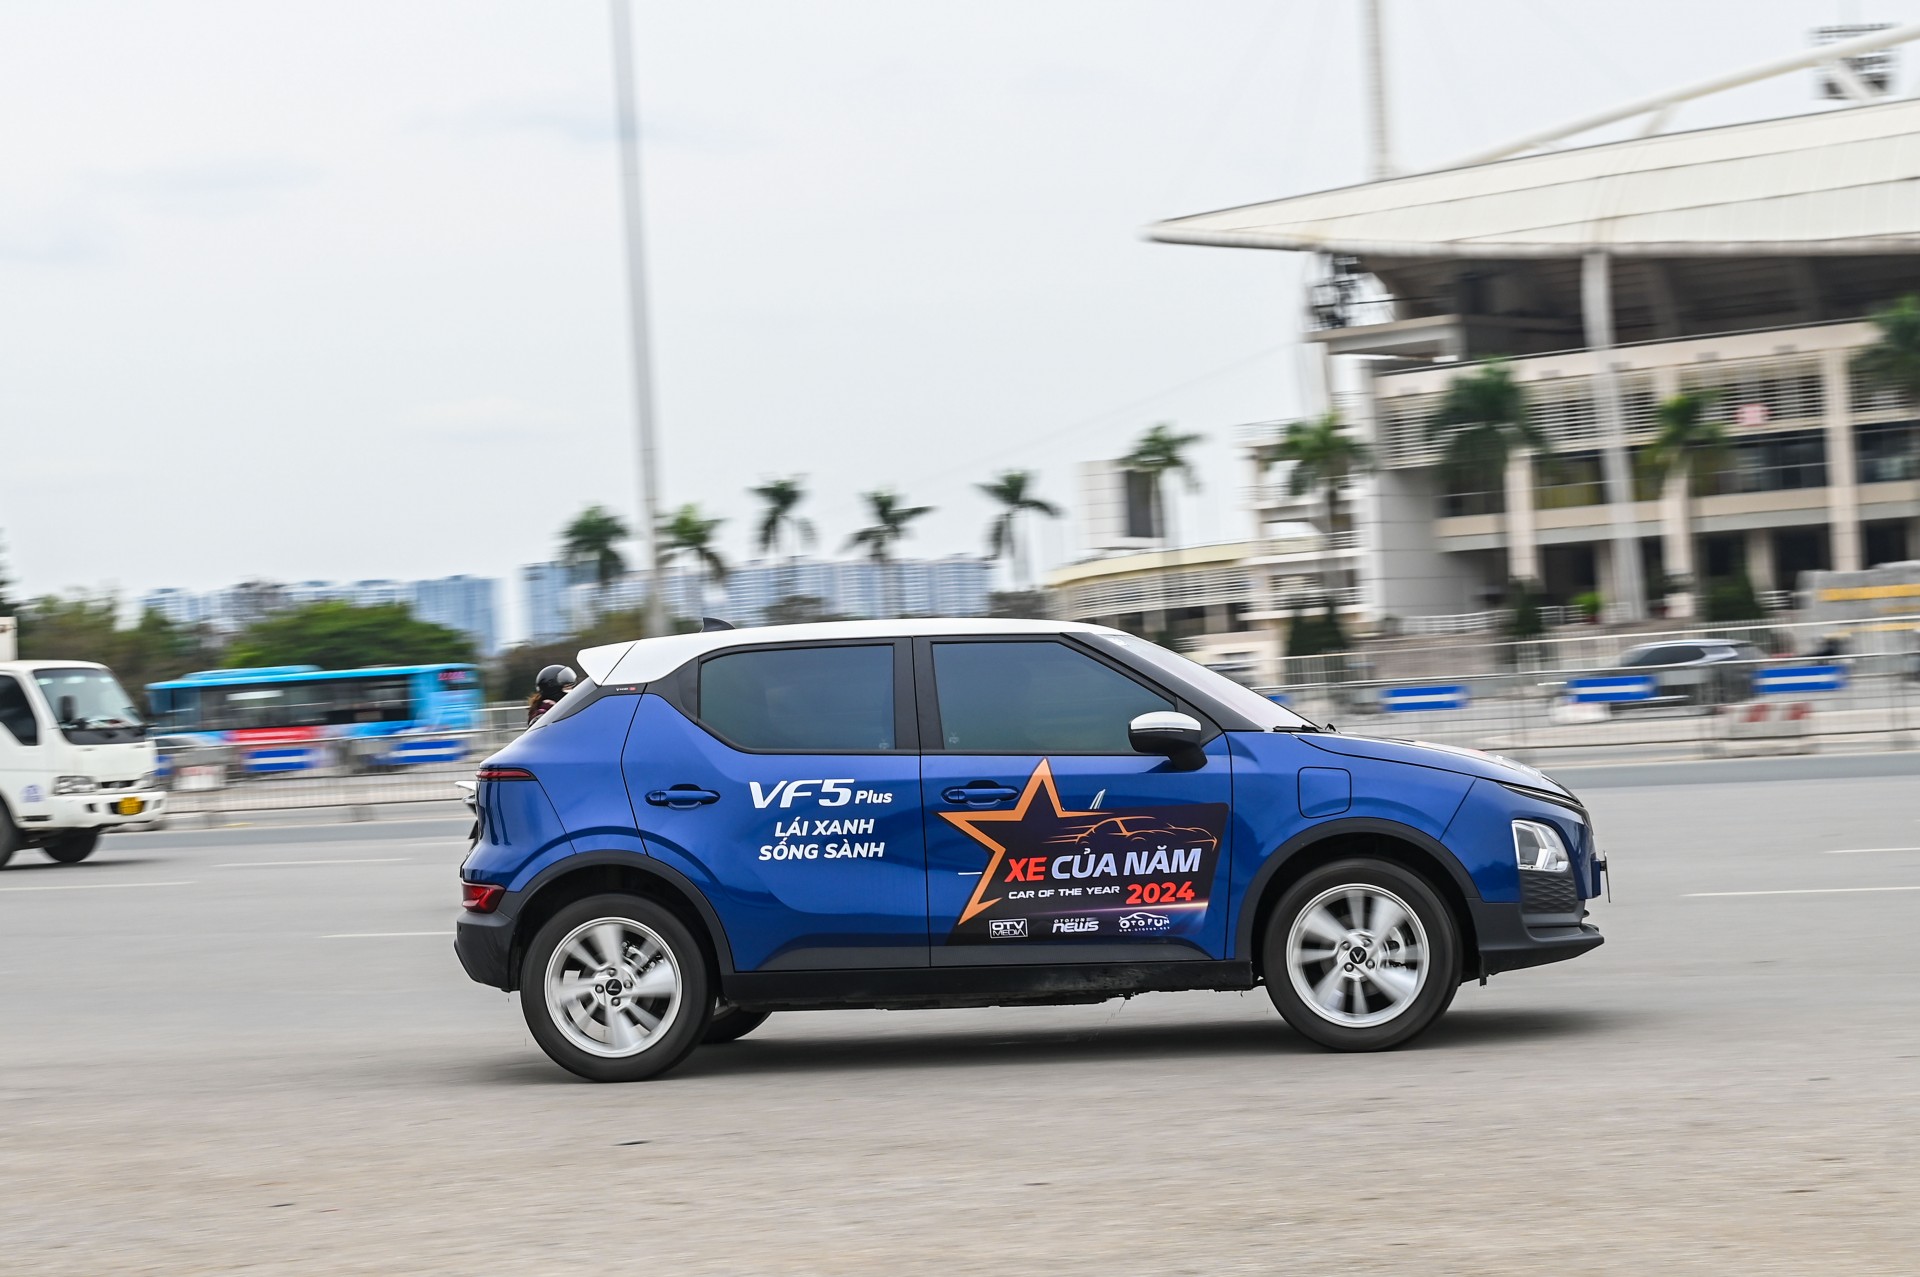 Điểm mặt 13 xe lái thử trong chương trình XE CỦA NĂM 2024